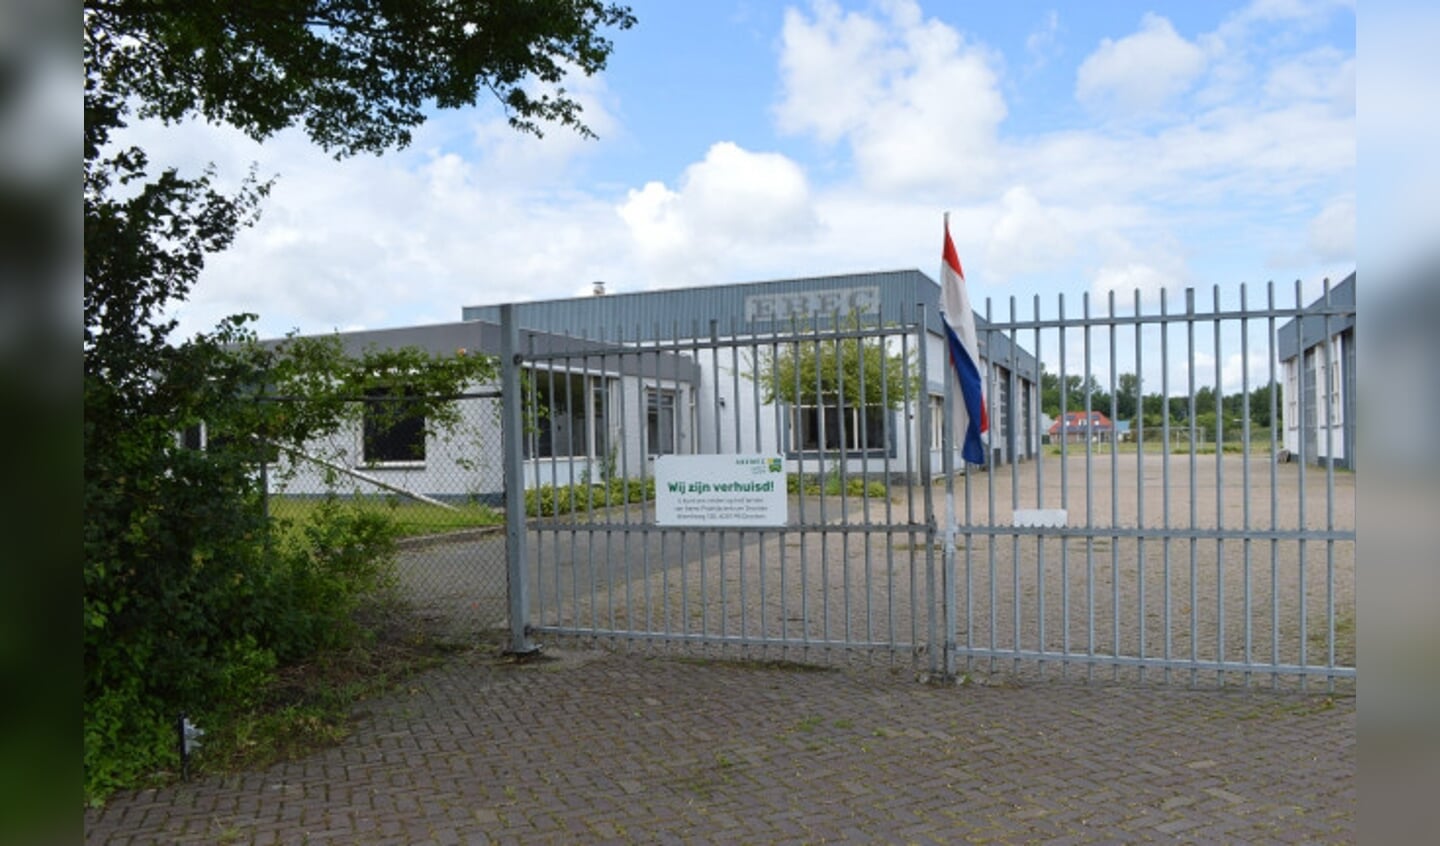  Het pand van Van Arendonk heeft de gemeente 1 miljoen euro gekost.